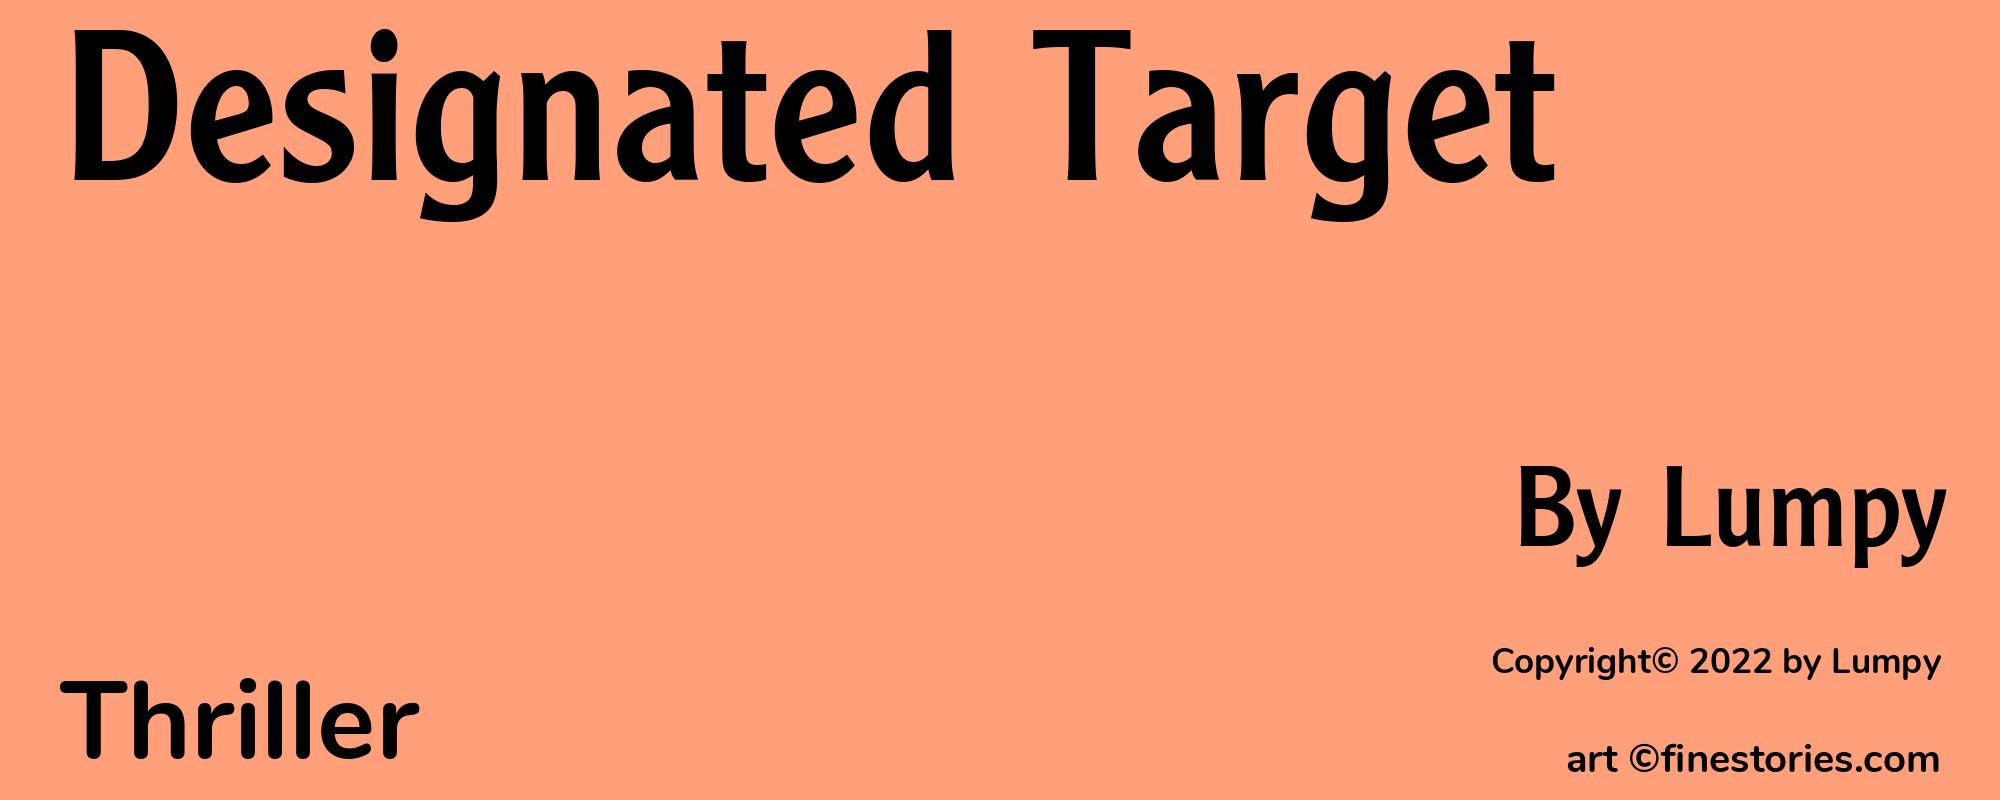 Designated Target - Cover